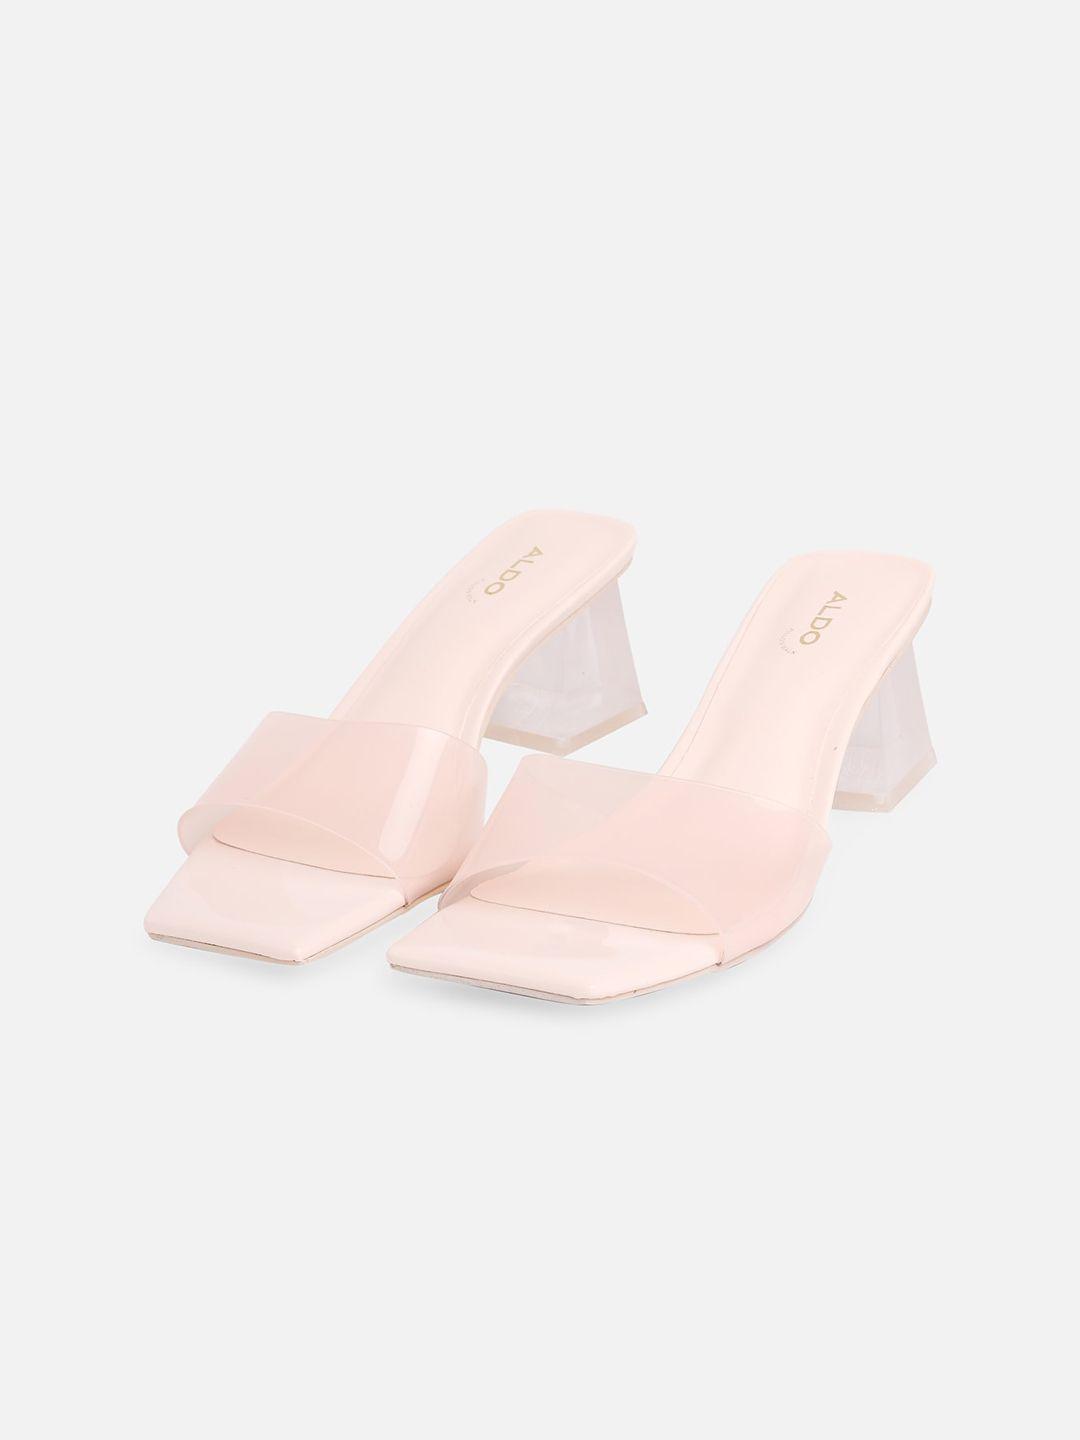 aldo square toe block mules heels